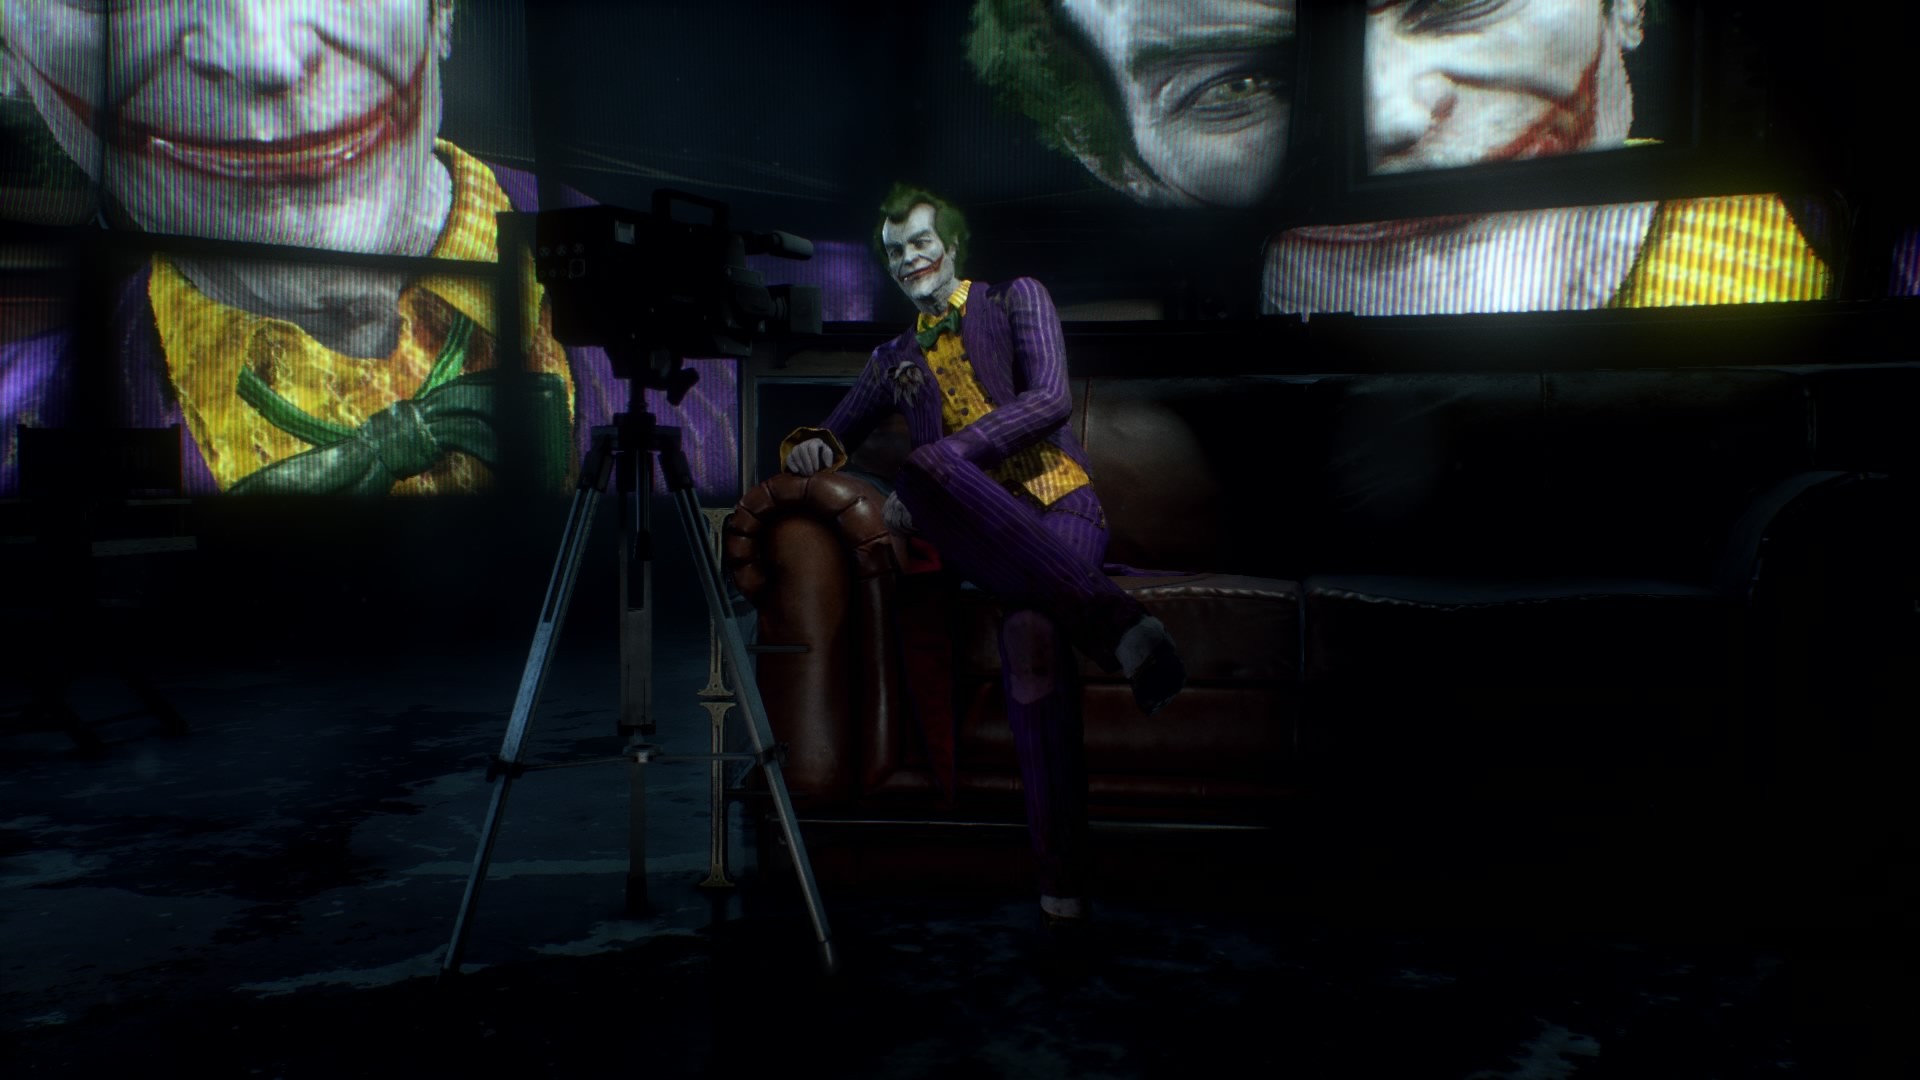 General 1920x1080 Batman Joker Batman: Arkham Knight video games Video Game Villains screen shot villains DC Comics Rocksteady Studios